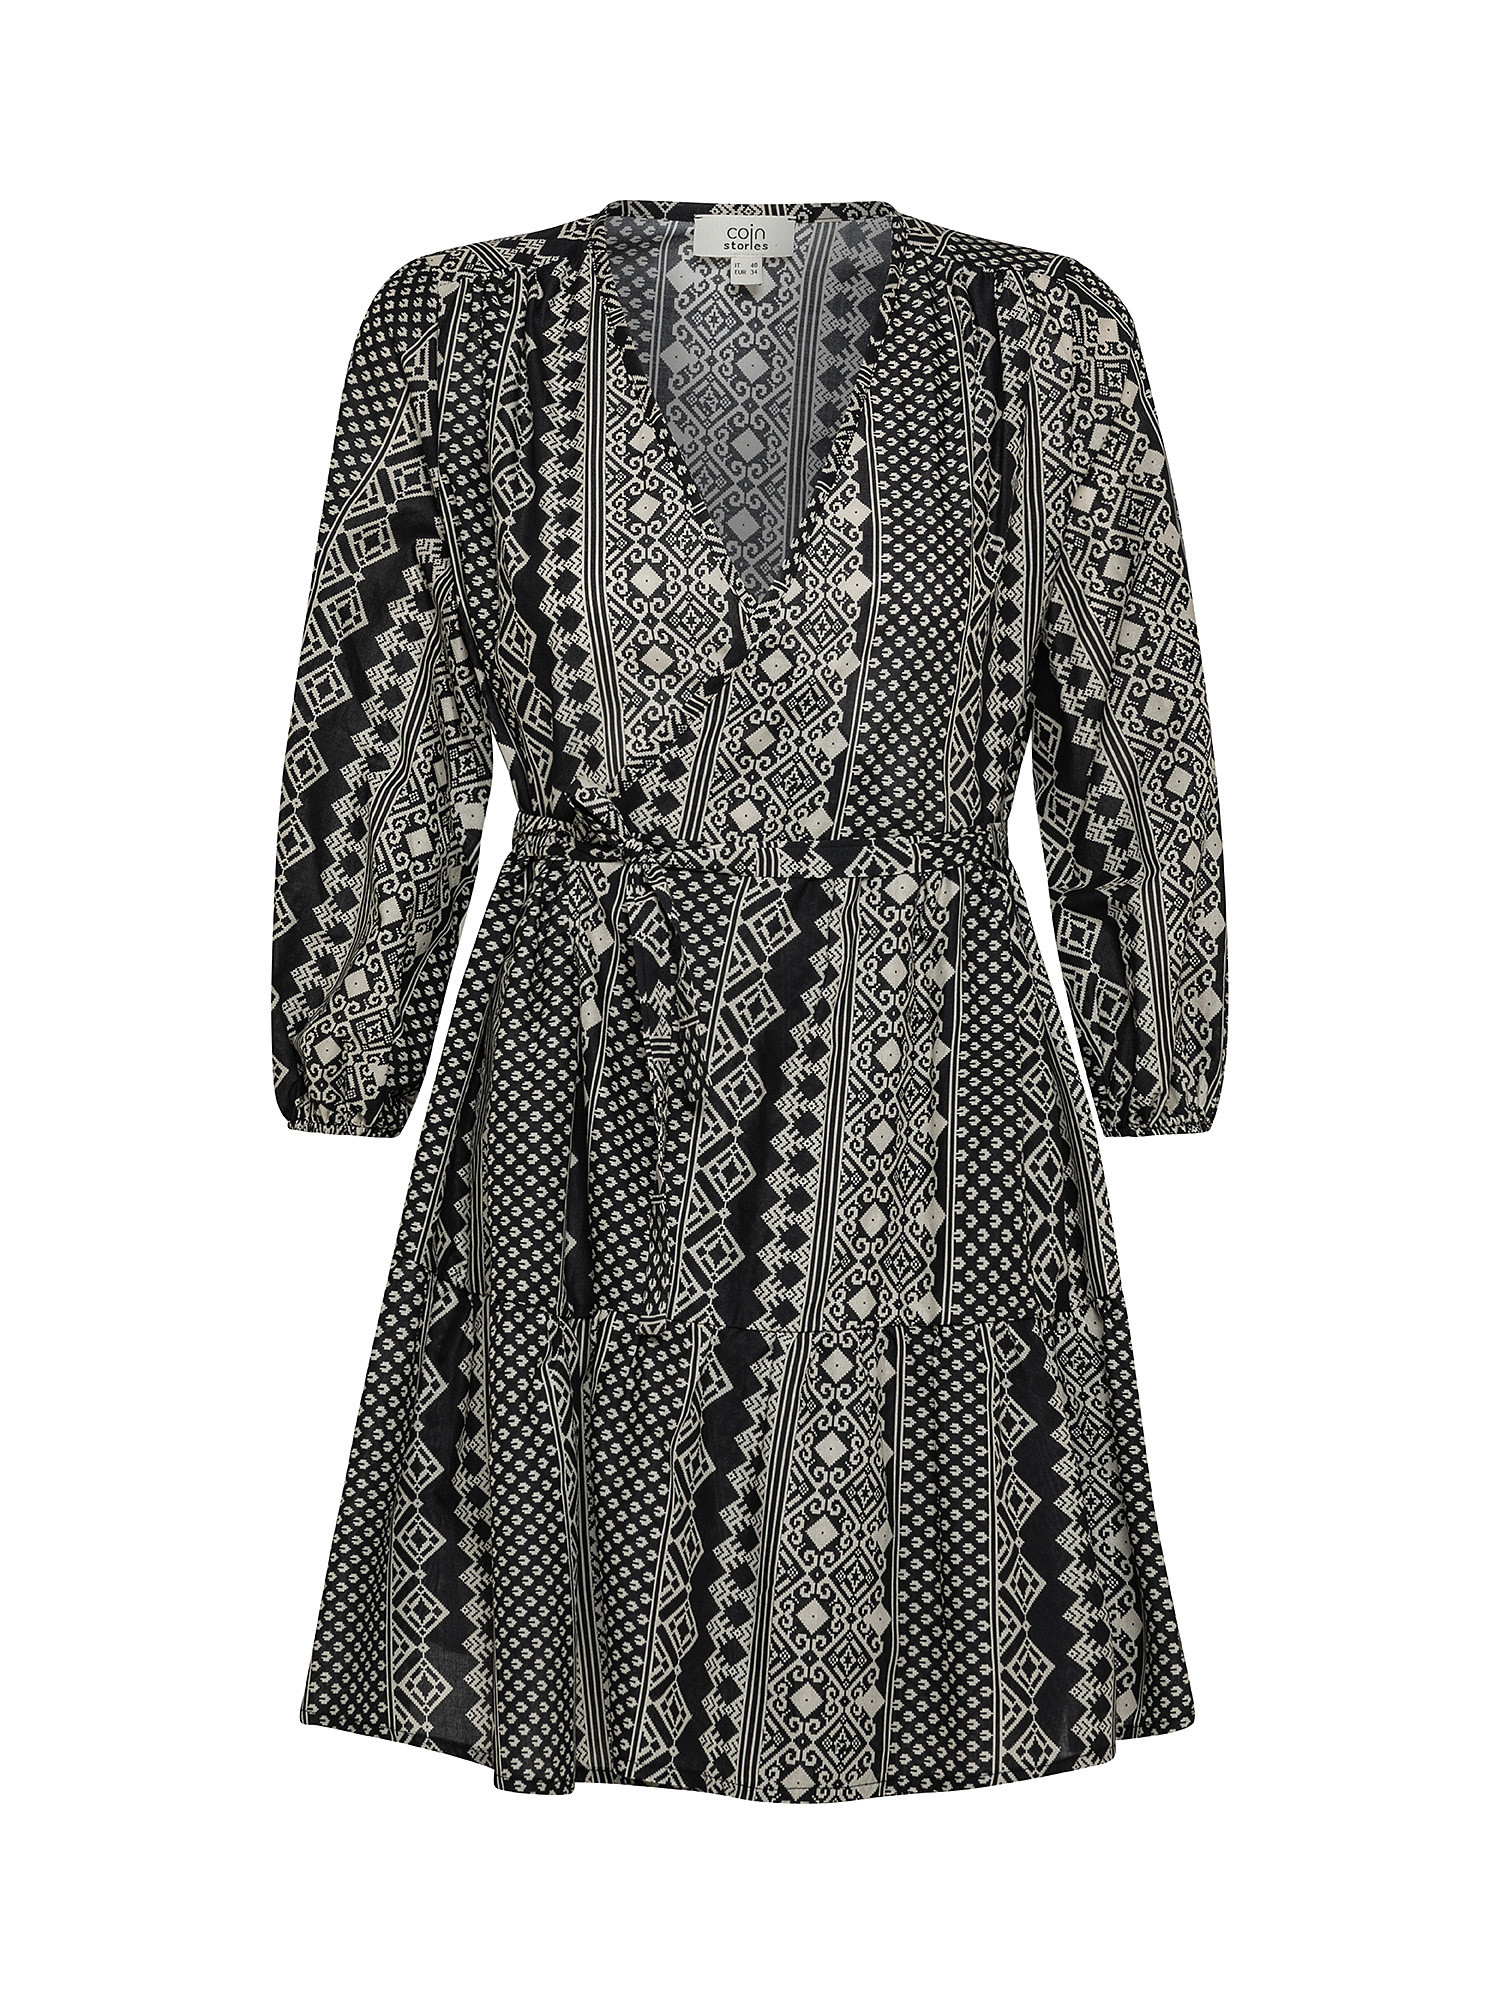 Patterned dress, Black, large image number 0